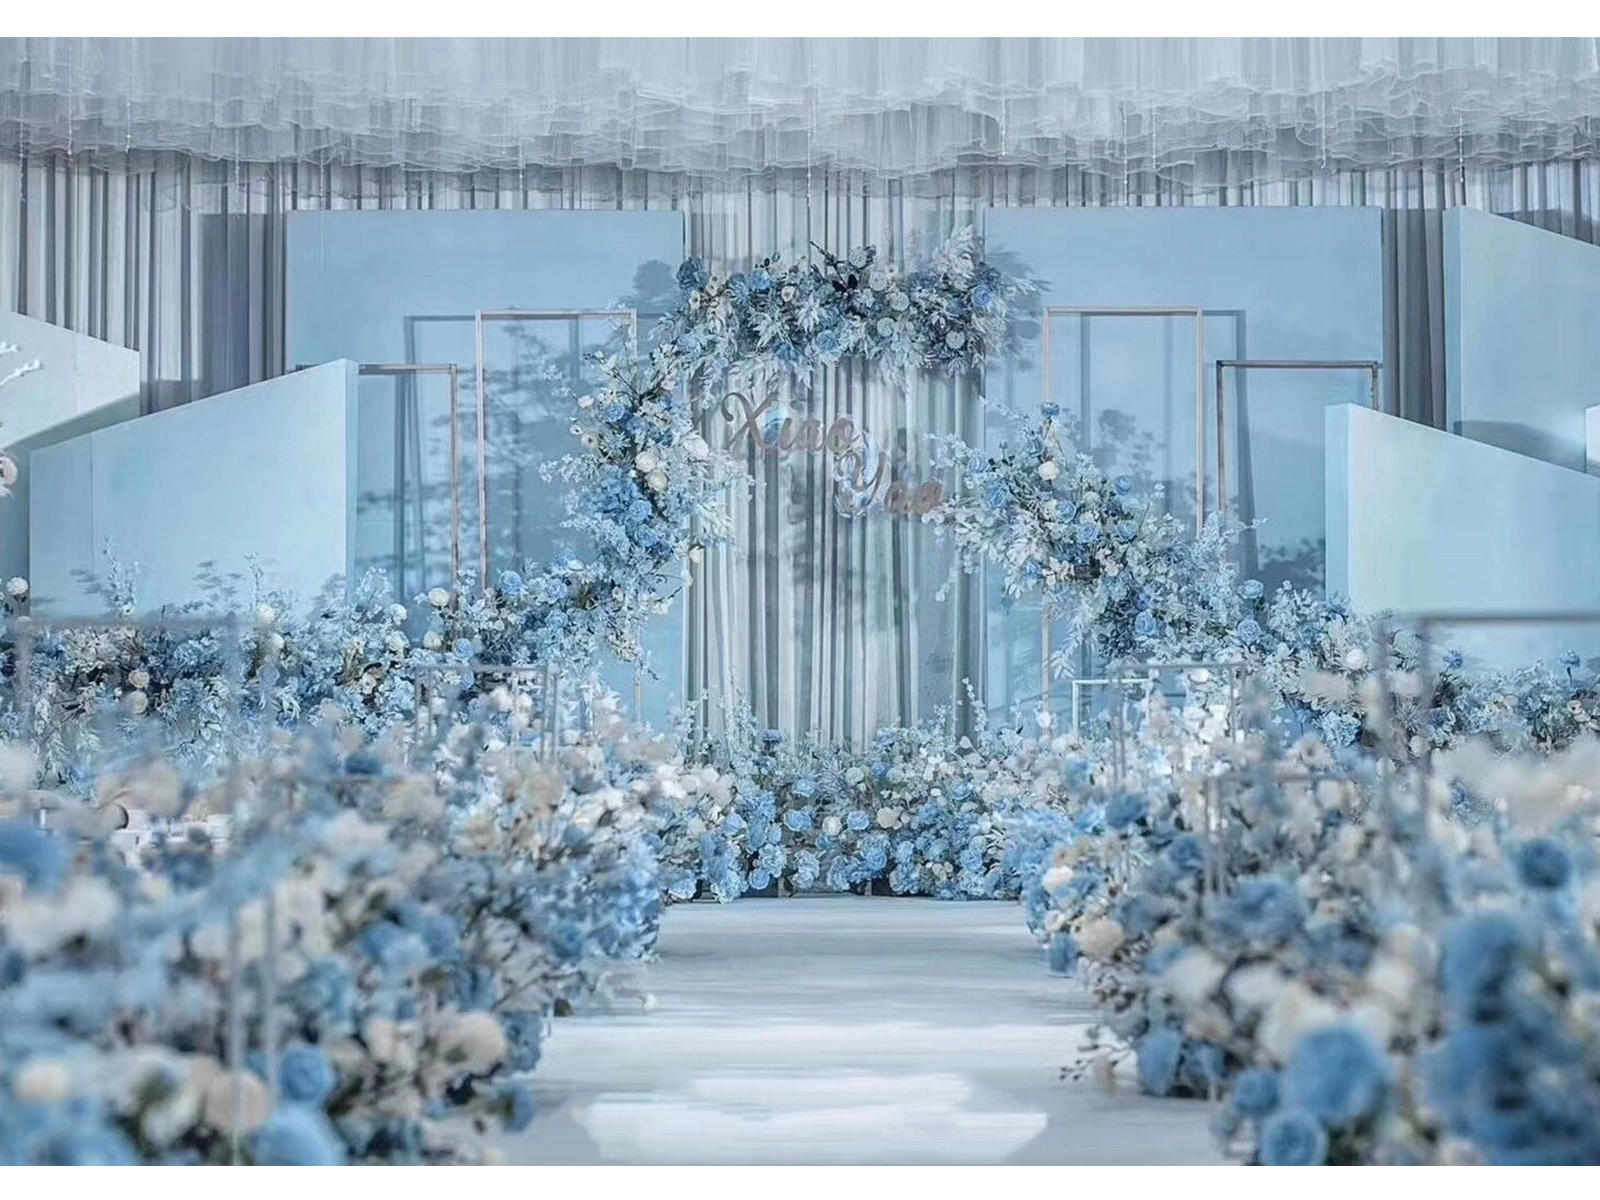 【和暄婚礼】雾霾蓝主题婚礼布置含四大金刚